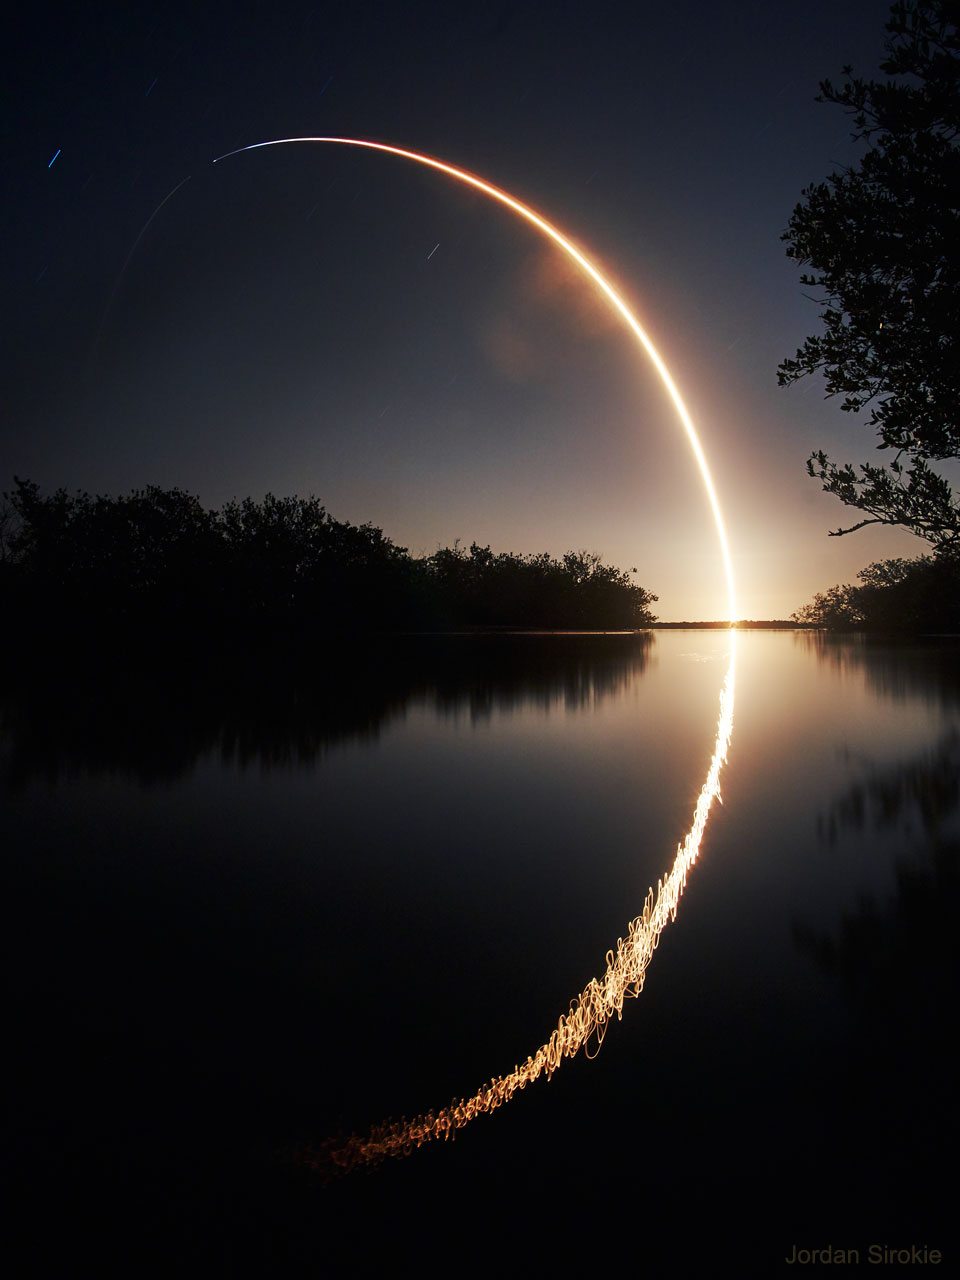 特色图像显示了NASA IXPE天文台发射到低地球轨道的长时间曝光图像。此次发射是在SpaceX的猎鹰9号火箭上进行的。有关更多详细信息，请参阅说明。